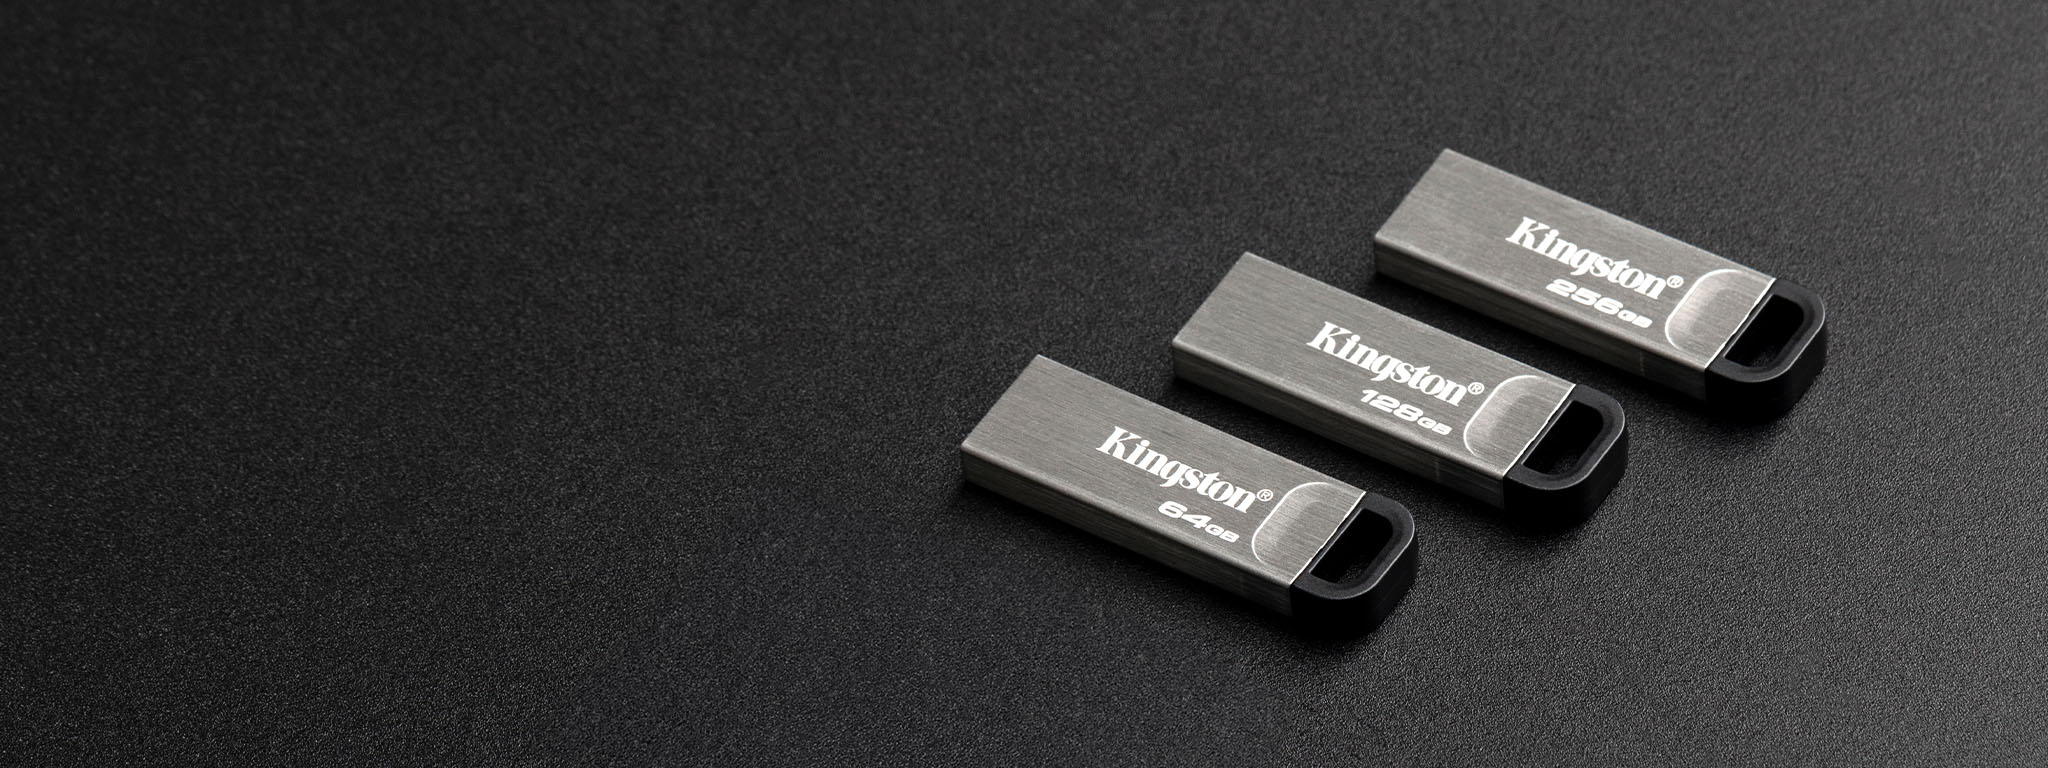 四個不同容量的 DT Kyson USB 隨身碟放置在黑色表面的俯視畫面